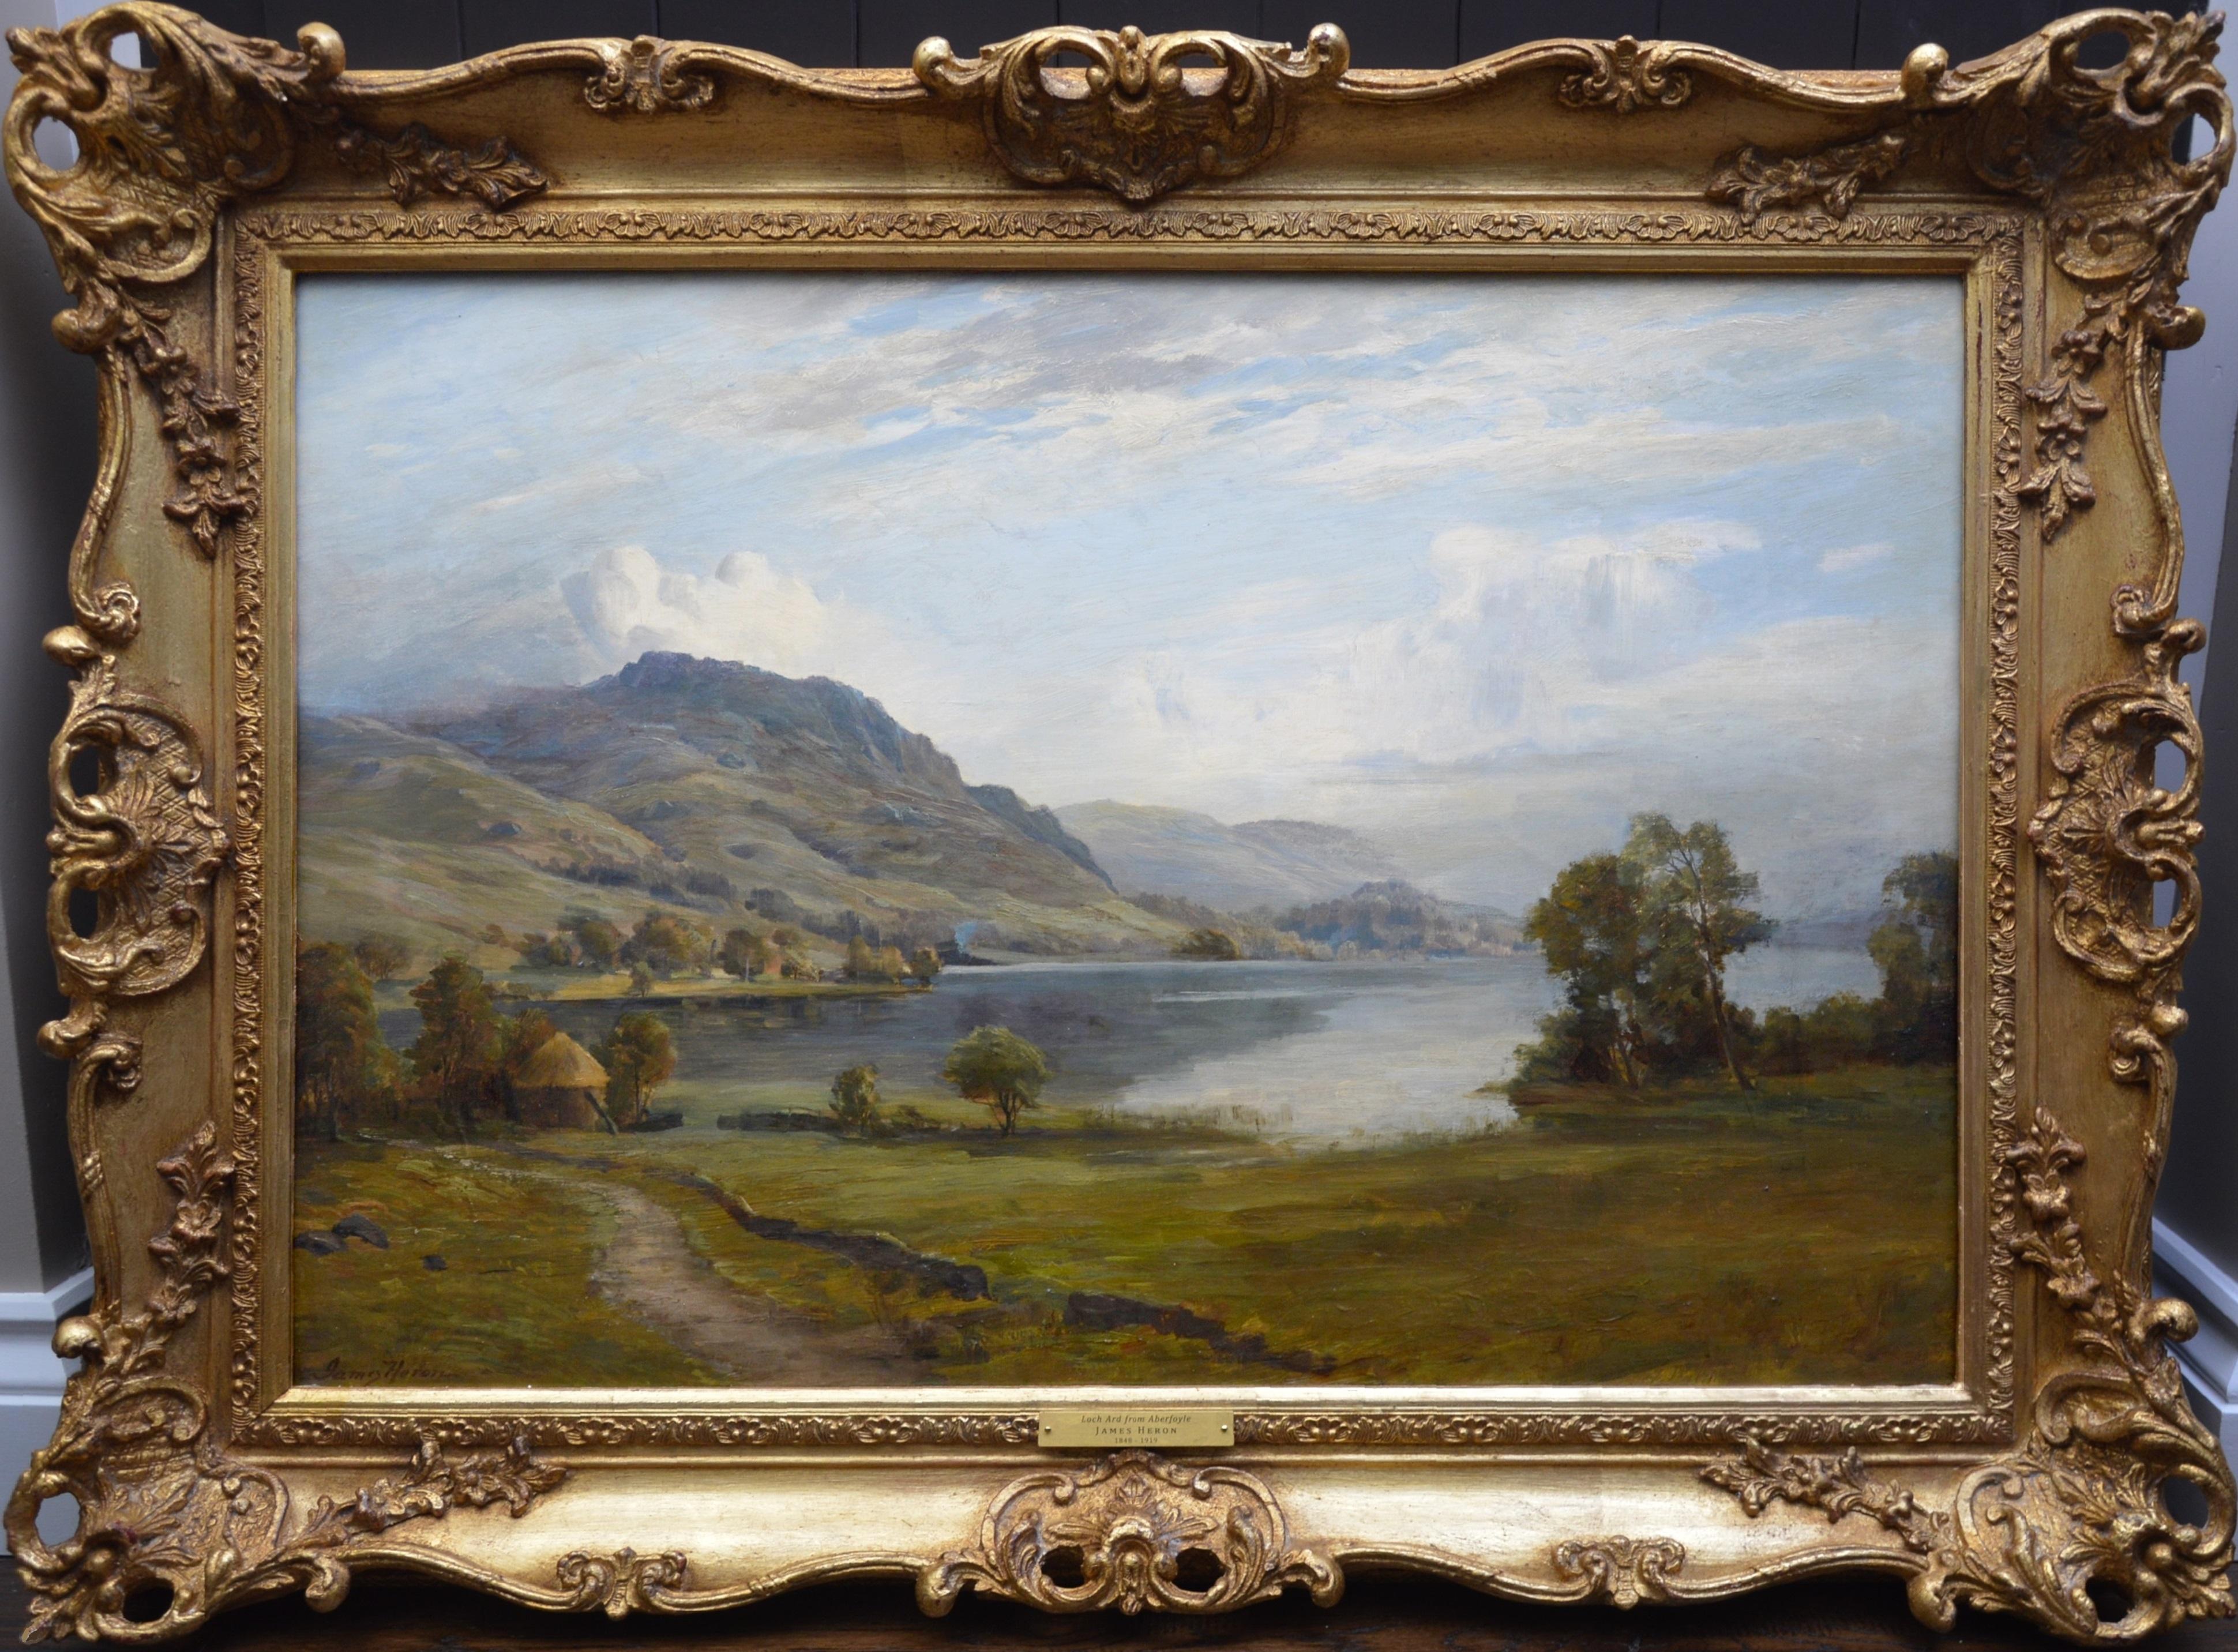 Landscape Painting James Heron - Loch Ard from Aberfoyle - Paysage écossais du 19ème siècle - Peinture à l'huile